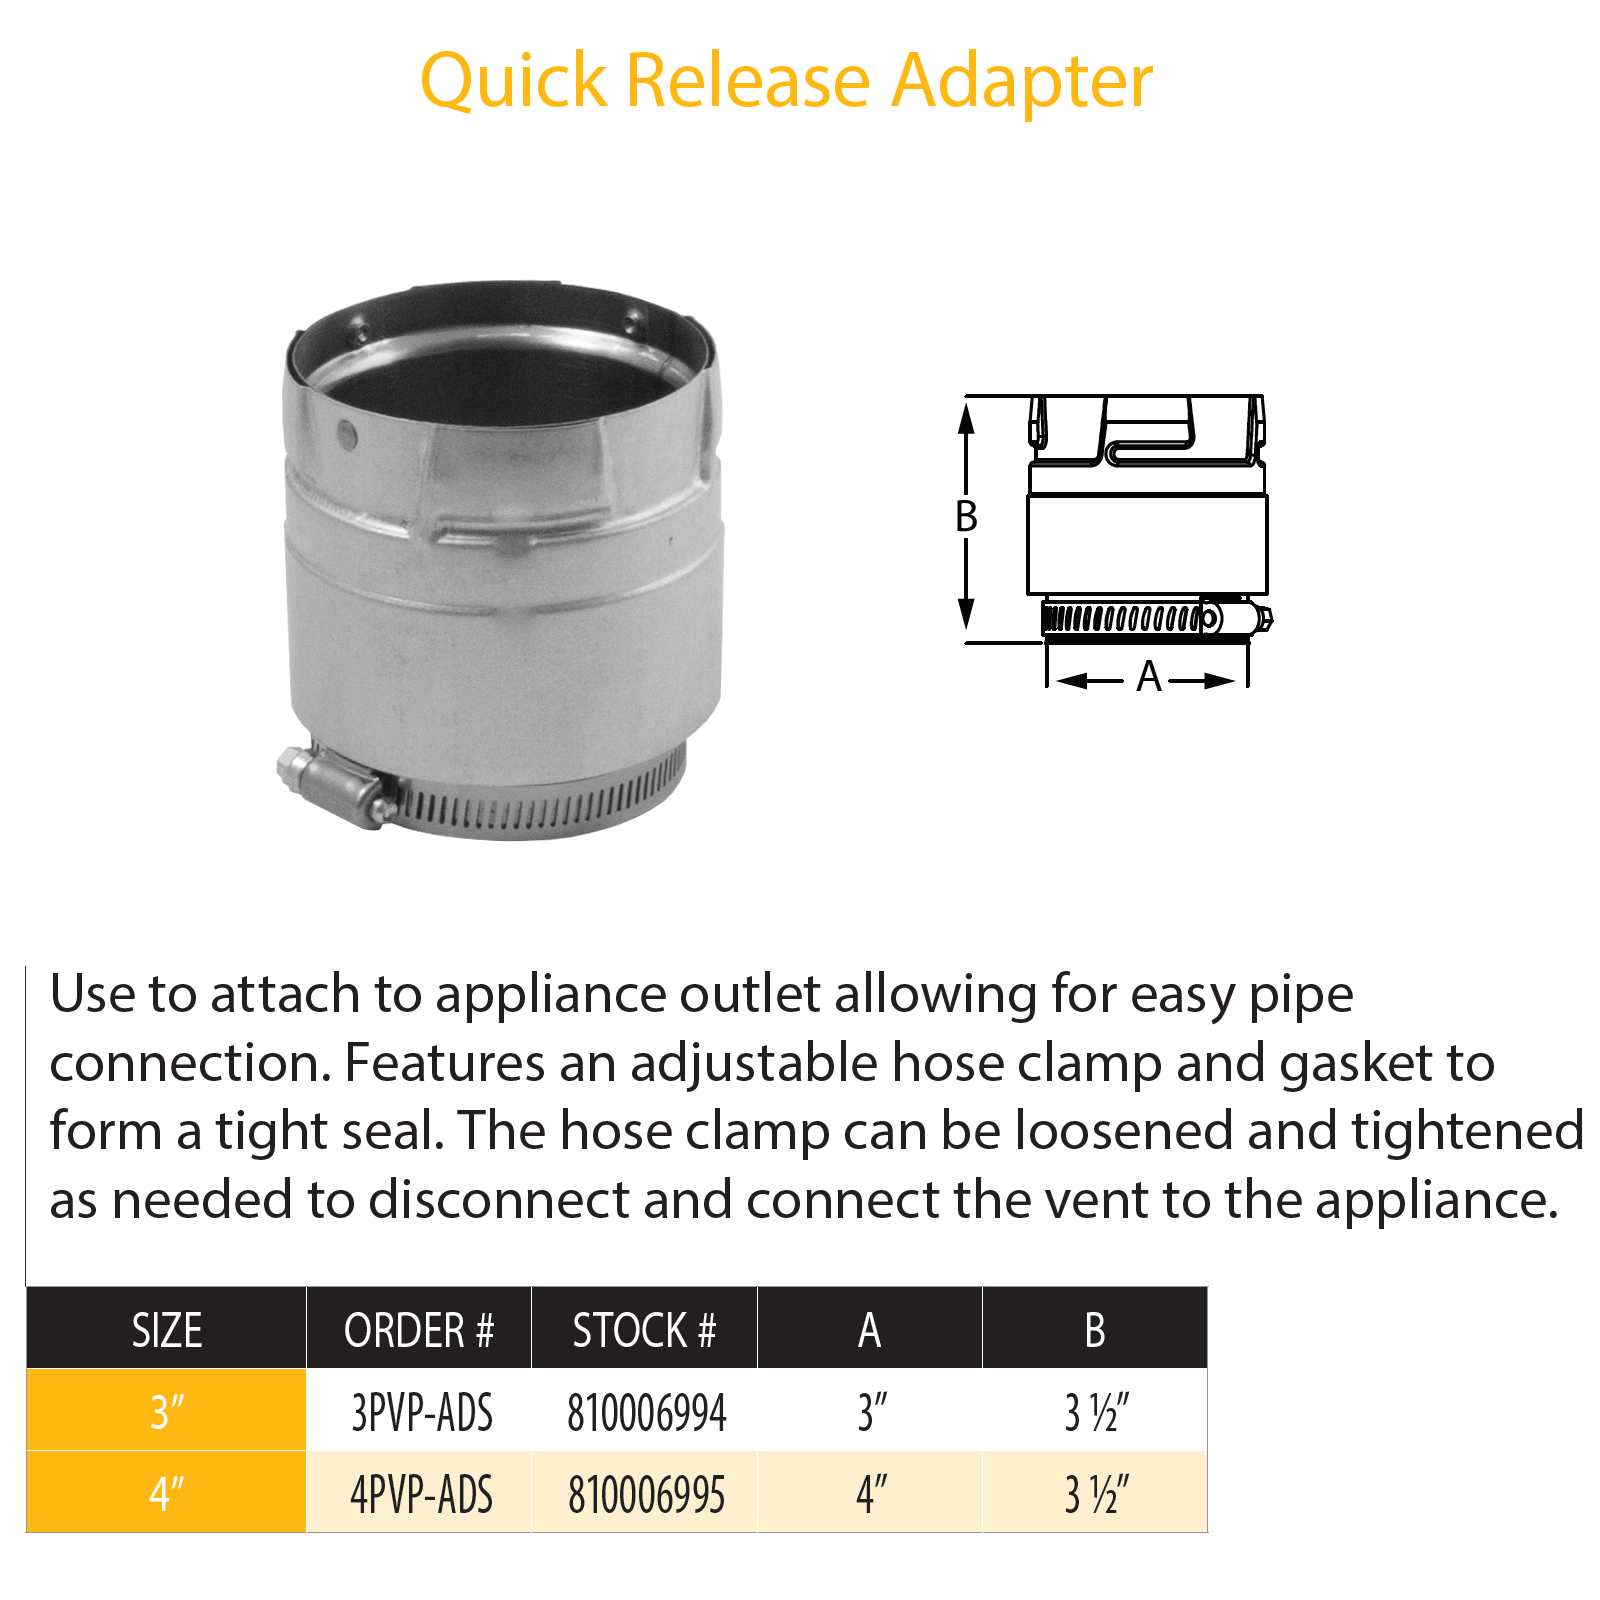 DuraVent Pellet Vent Pro Quick Release PelletVent Adapter | 4PVP-ADS